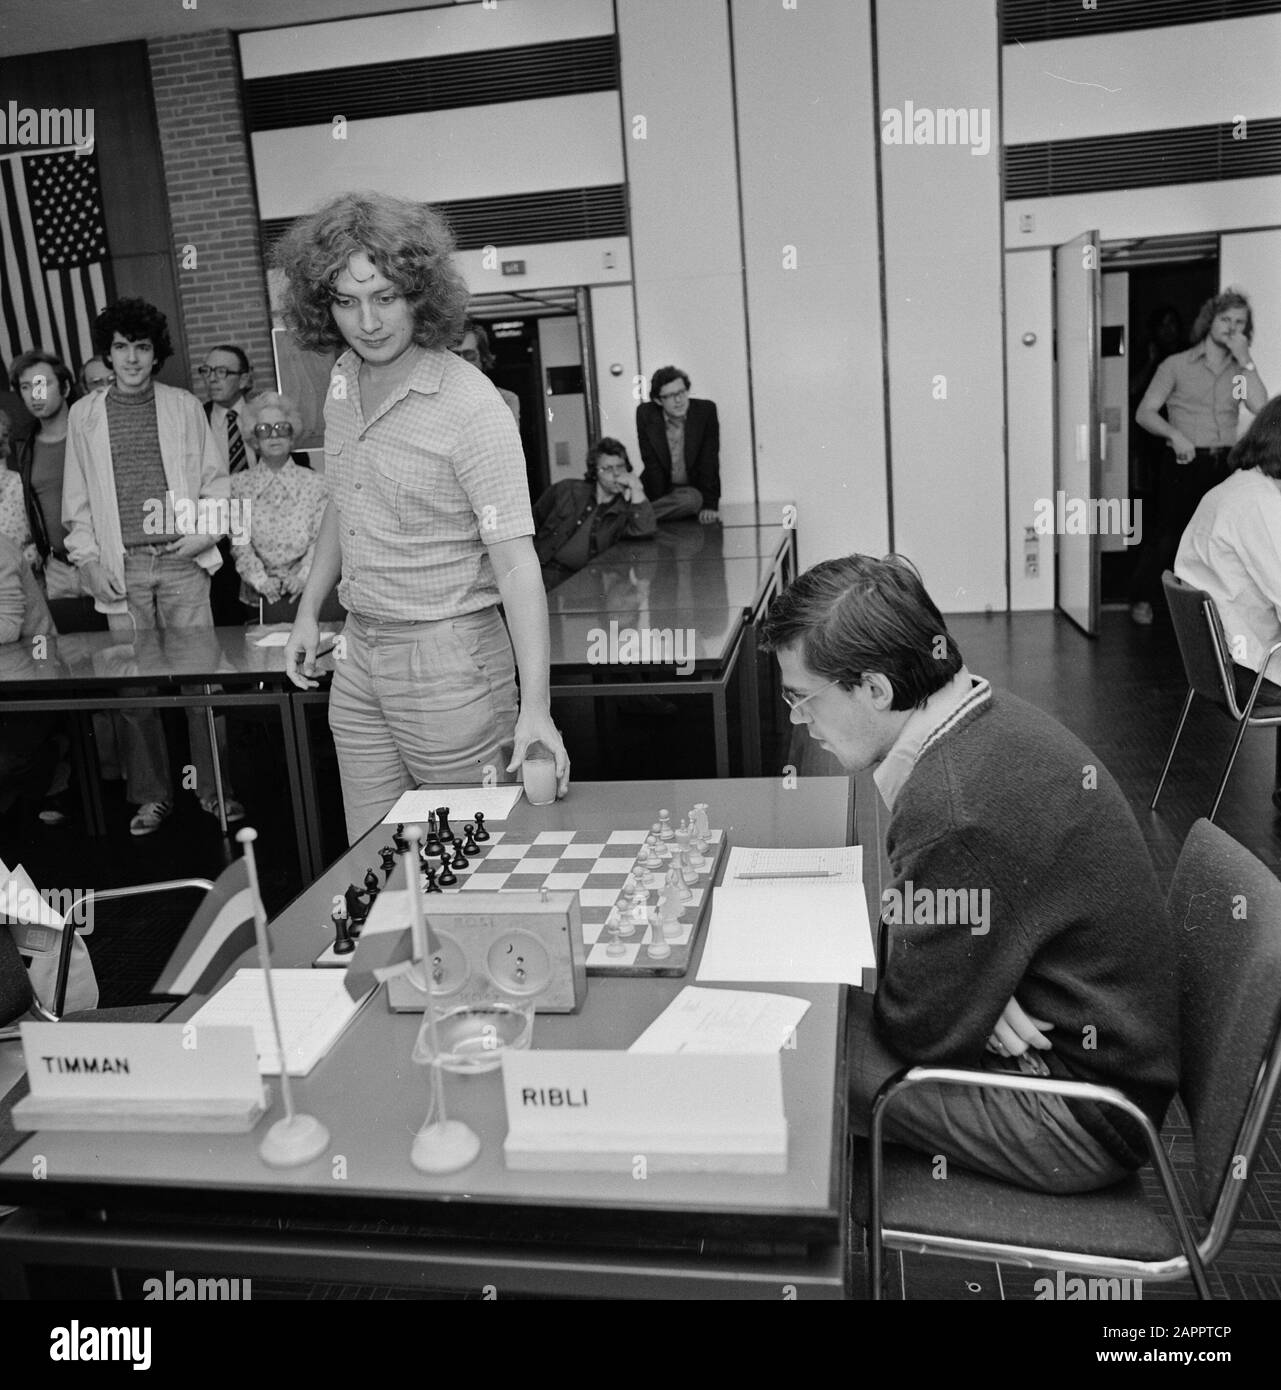 Torneo di Scacchi IBM, 4th Round; Ribli (l) Contro Timman Data: 17 luglio 1978 Parole Chiave: Chess Institution Nome: IBM Foto Stock